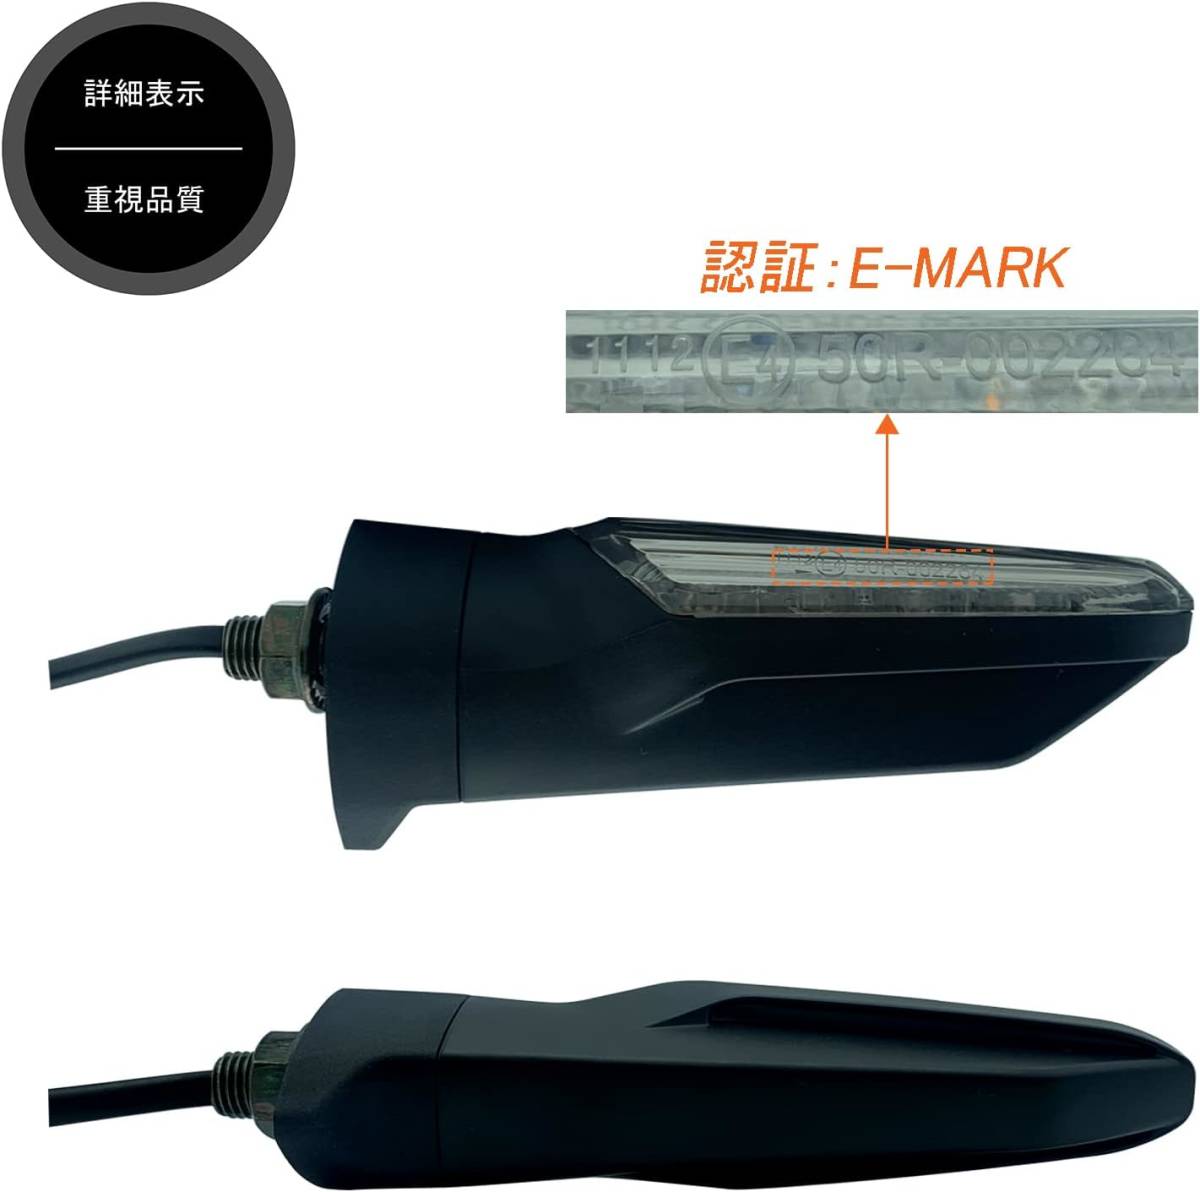 【新品】バイク用LED高輝度ウインカー(クリア/4個セット) ネジ:M10 Eマーク認証 車検対応_画像2